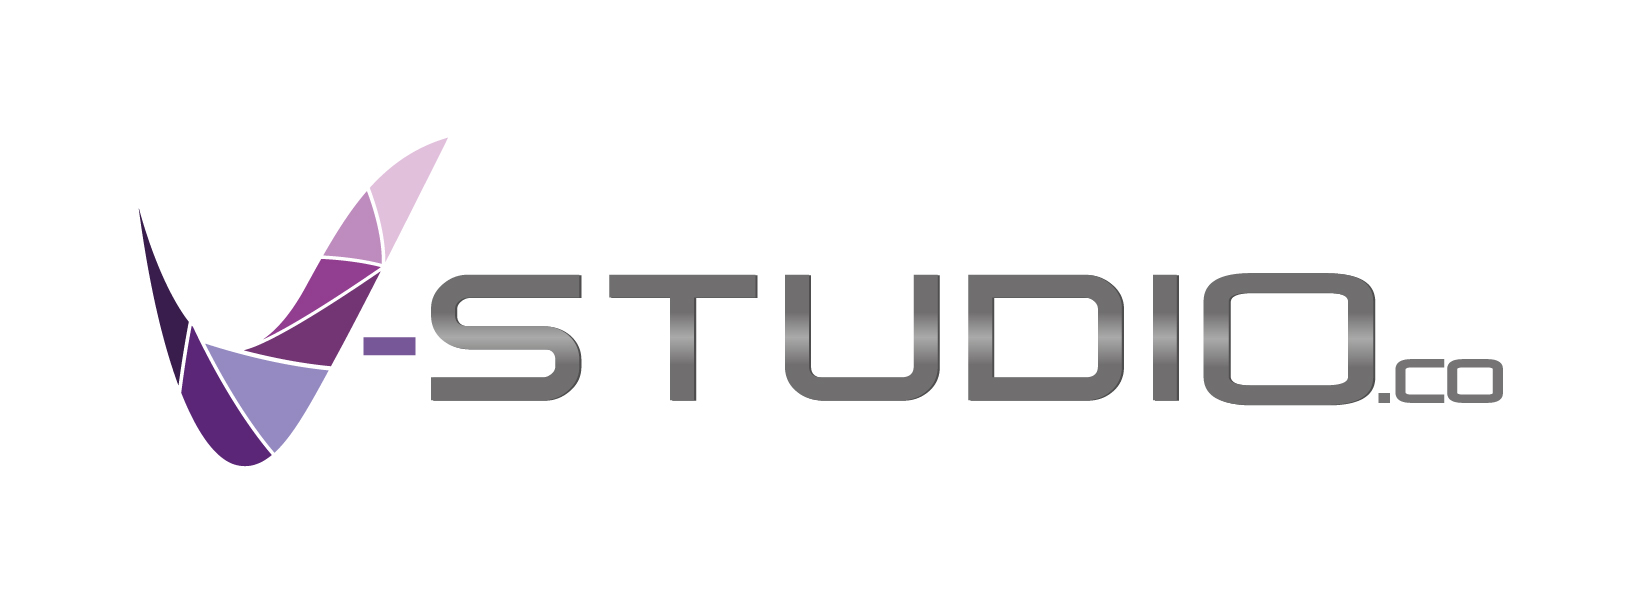 V-Studio logo